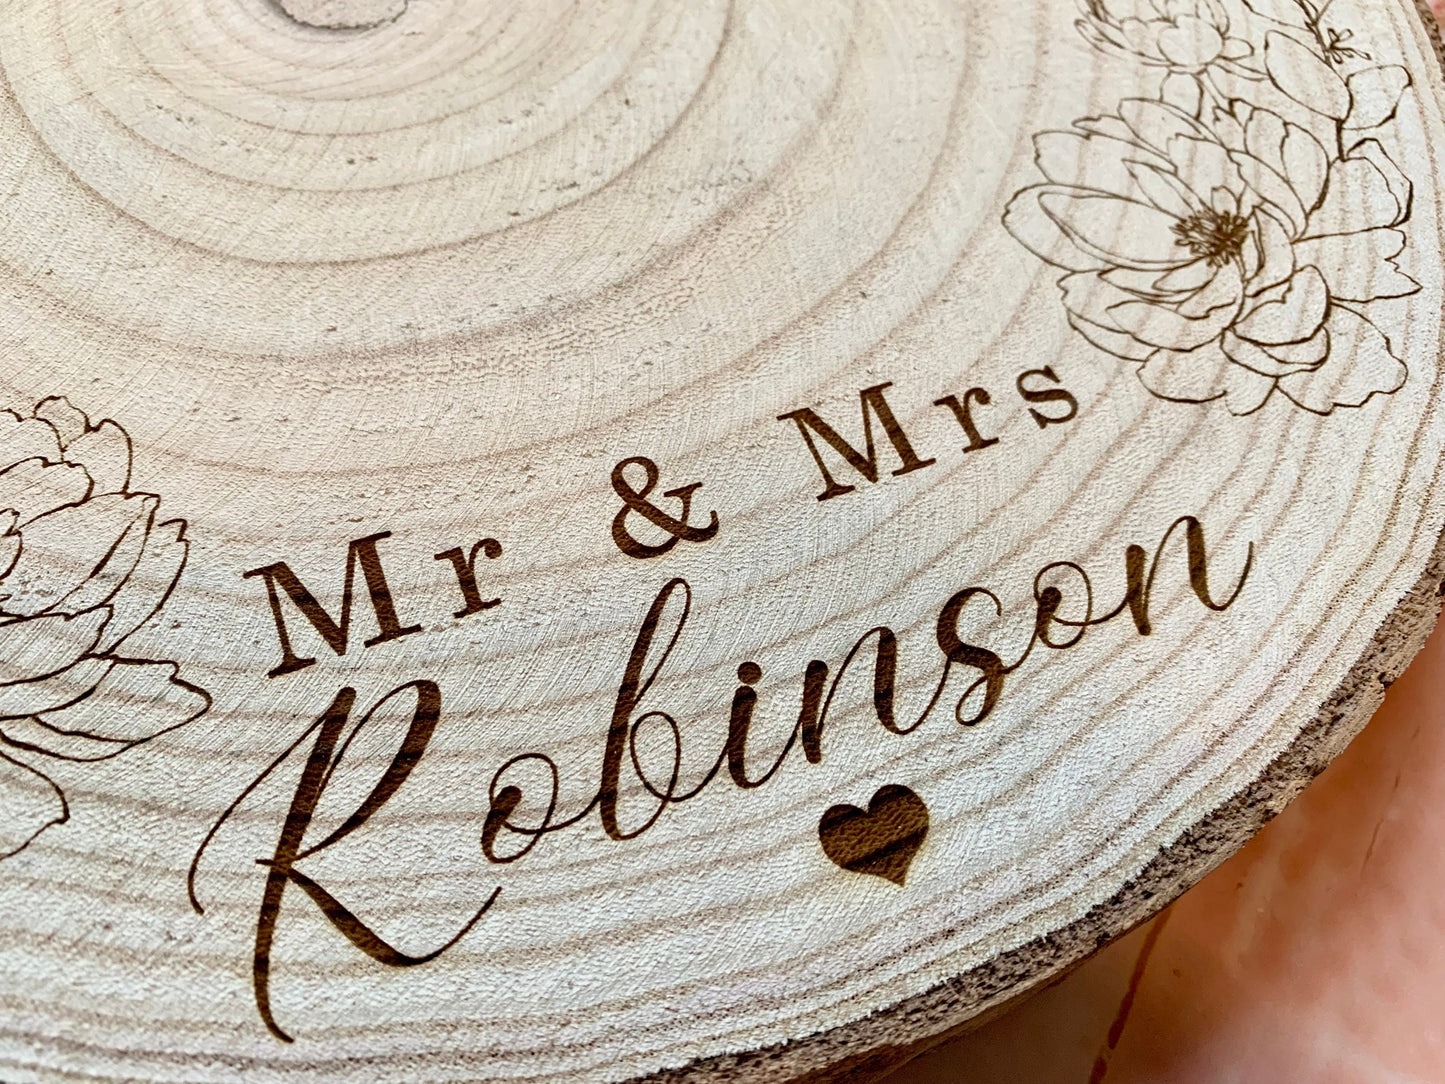 Personalised Engraved Wood Slice, Wedding Cake Display Board with Peonies - Resplendent Aurora